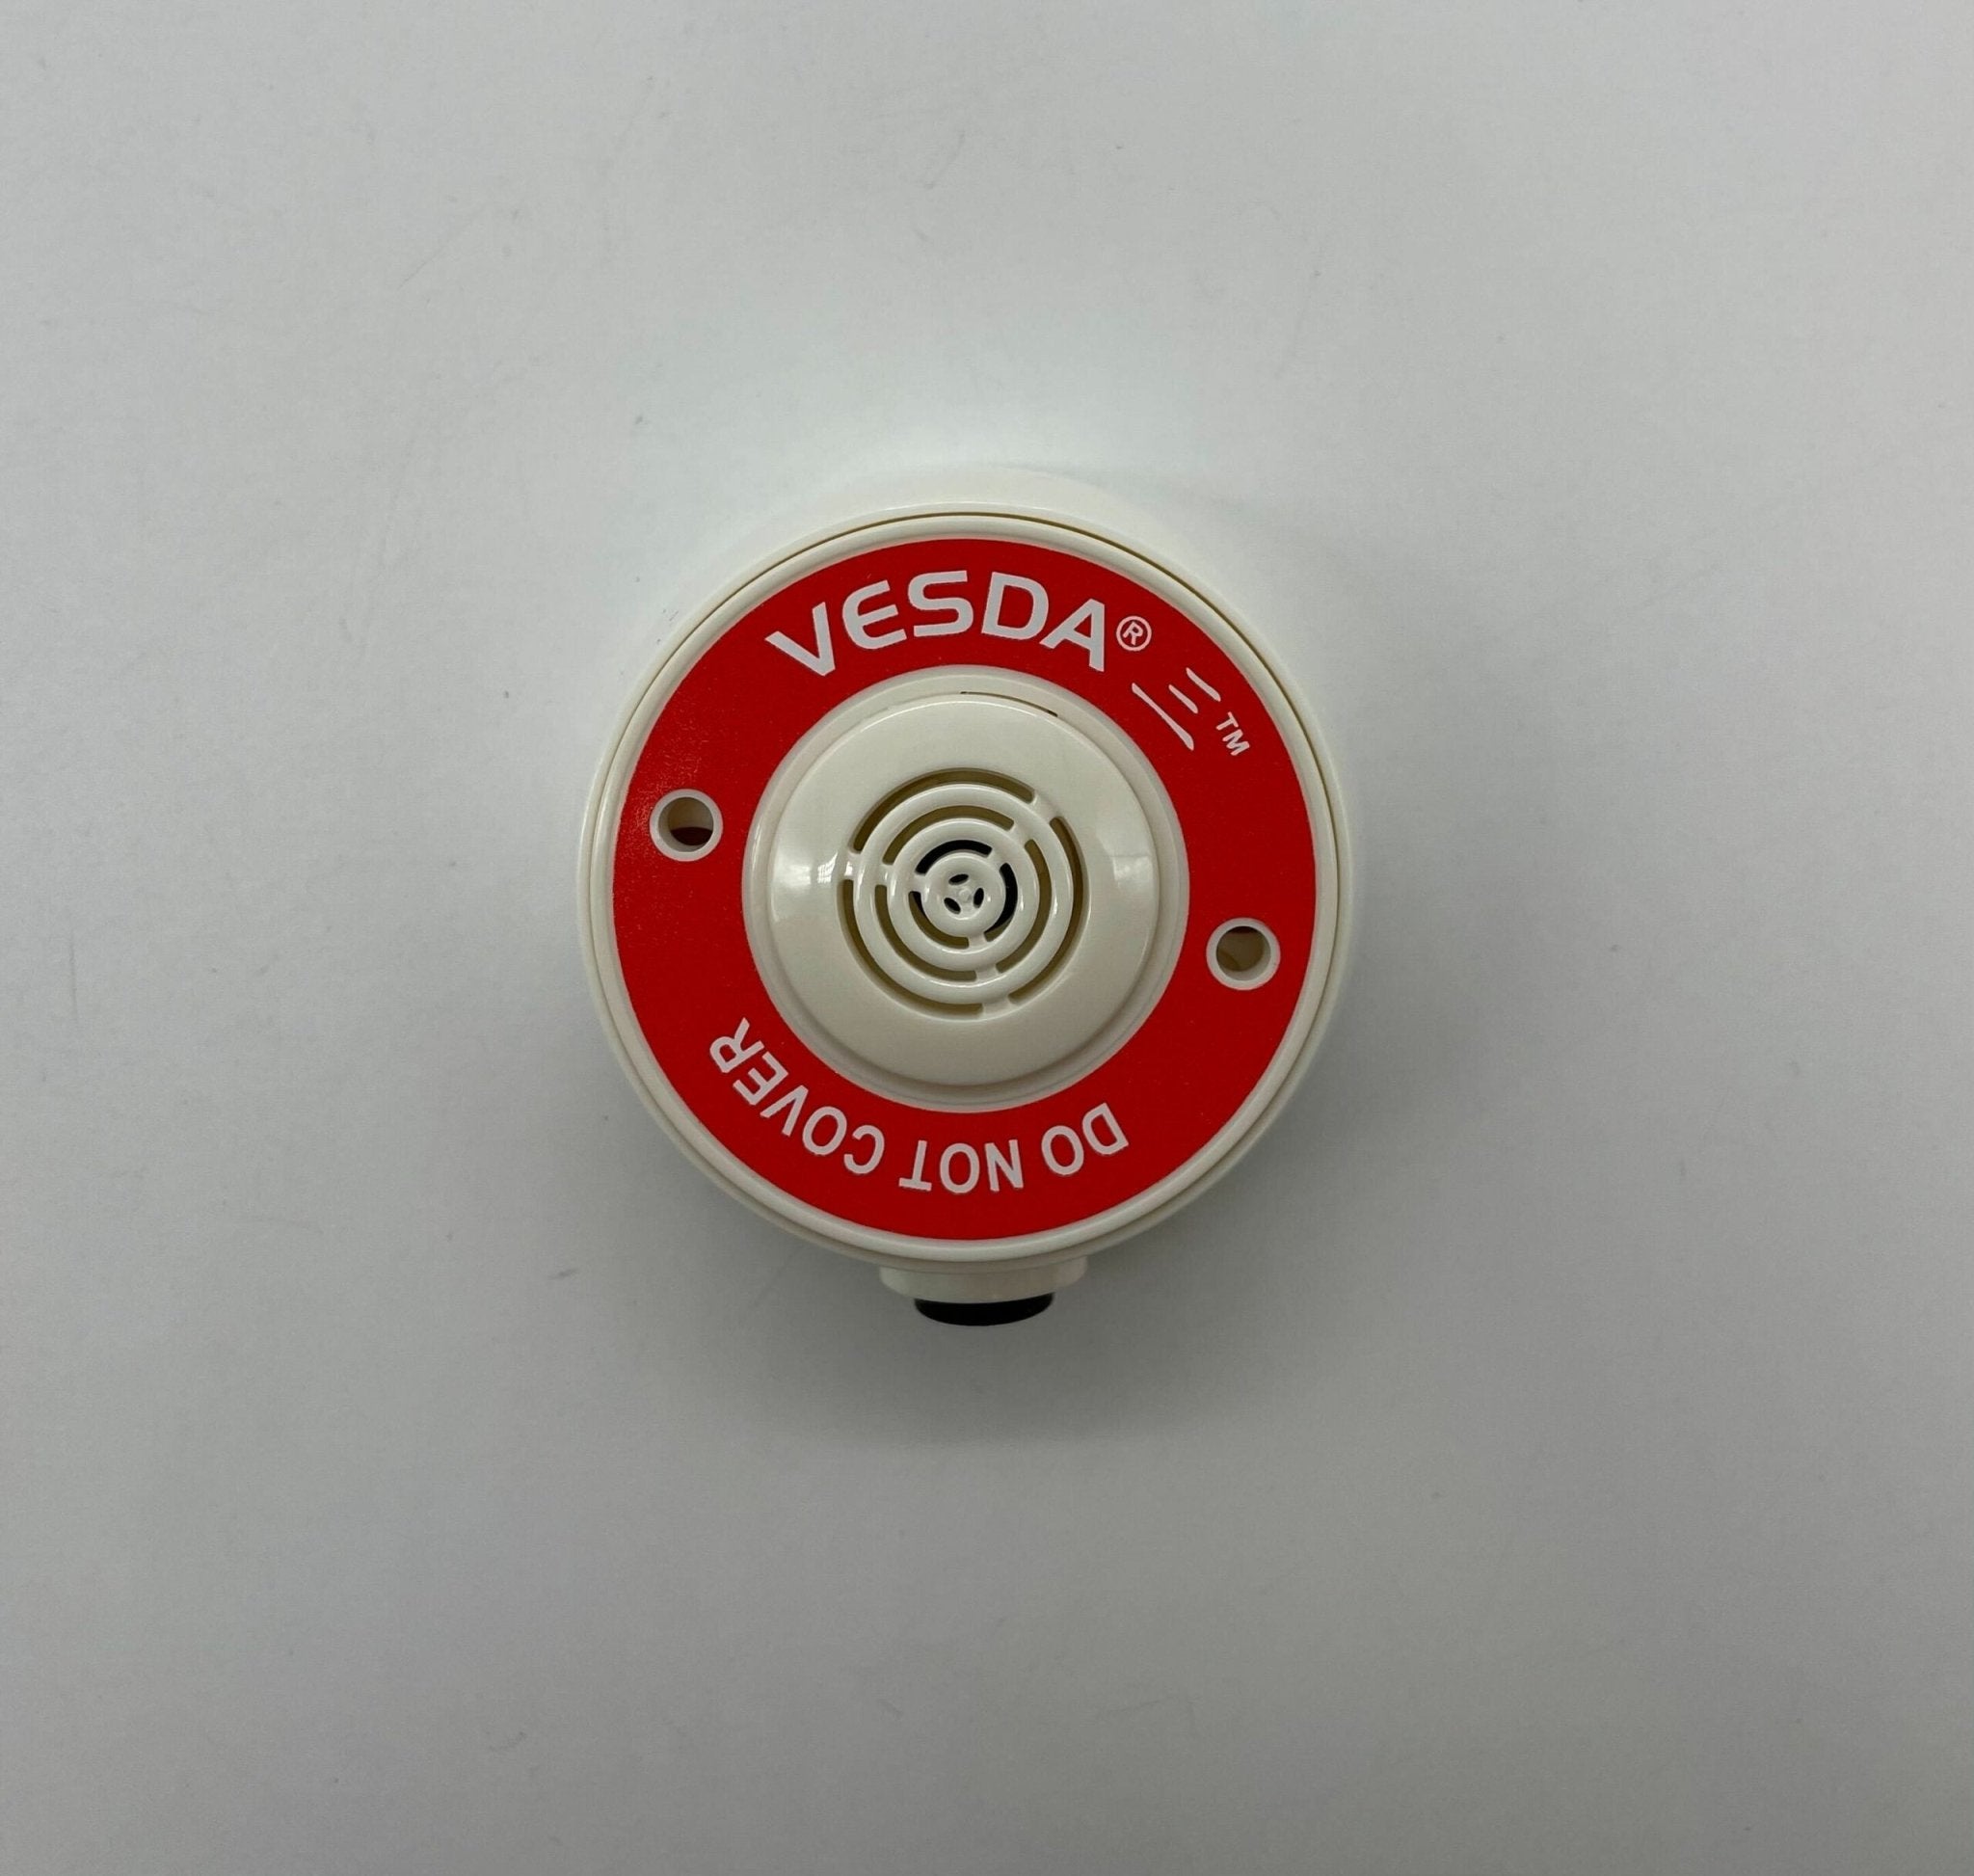 Vesda VSP-982-W 6MM Surf Mount Sampling Point, White - The Fire Alarm Supplier